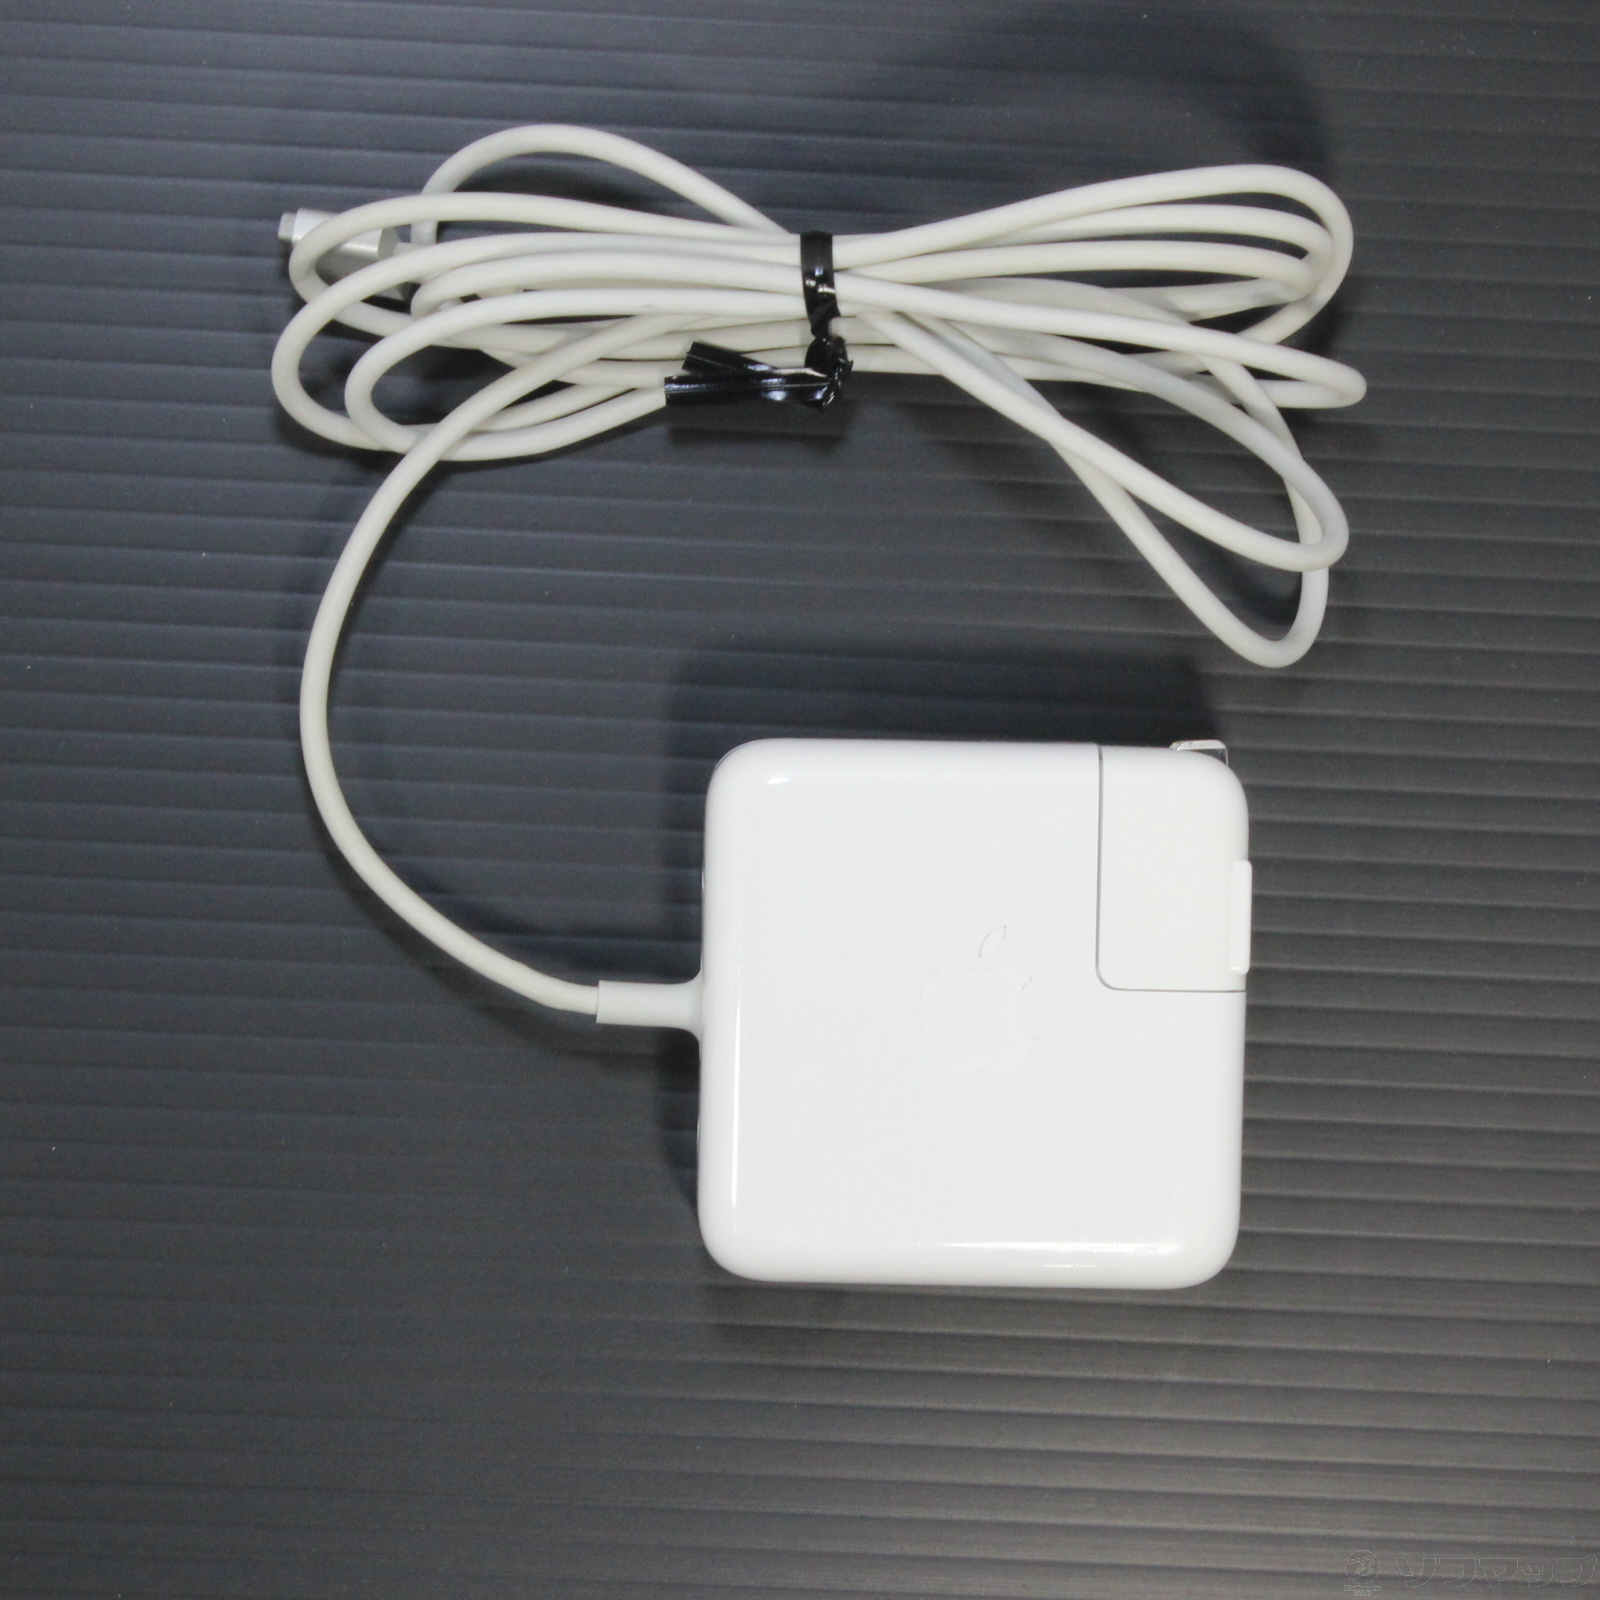 【未使用品】Apple MagSafe 2 電源アダプタ(85W)